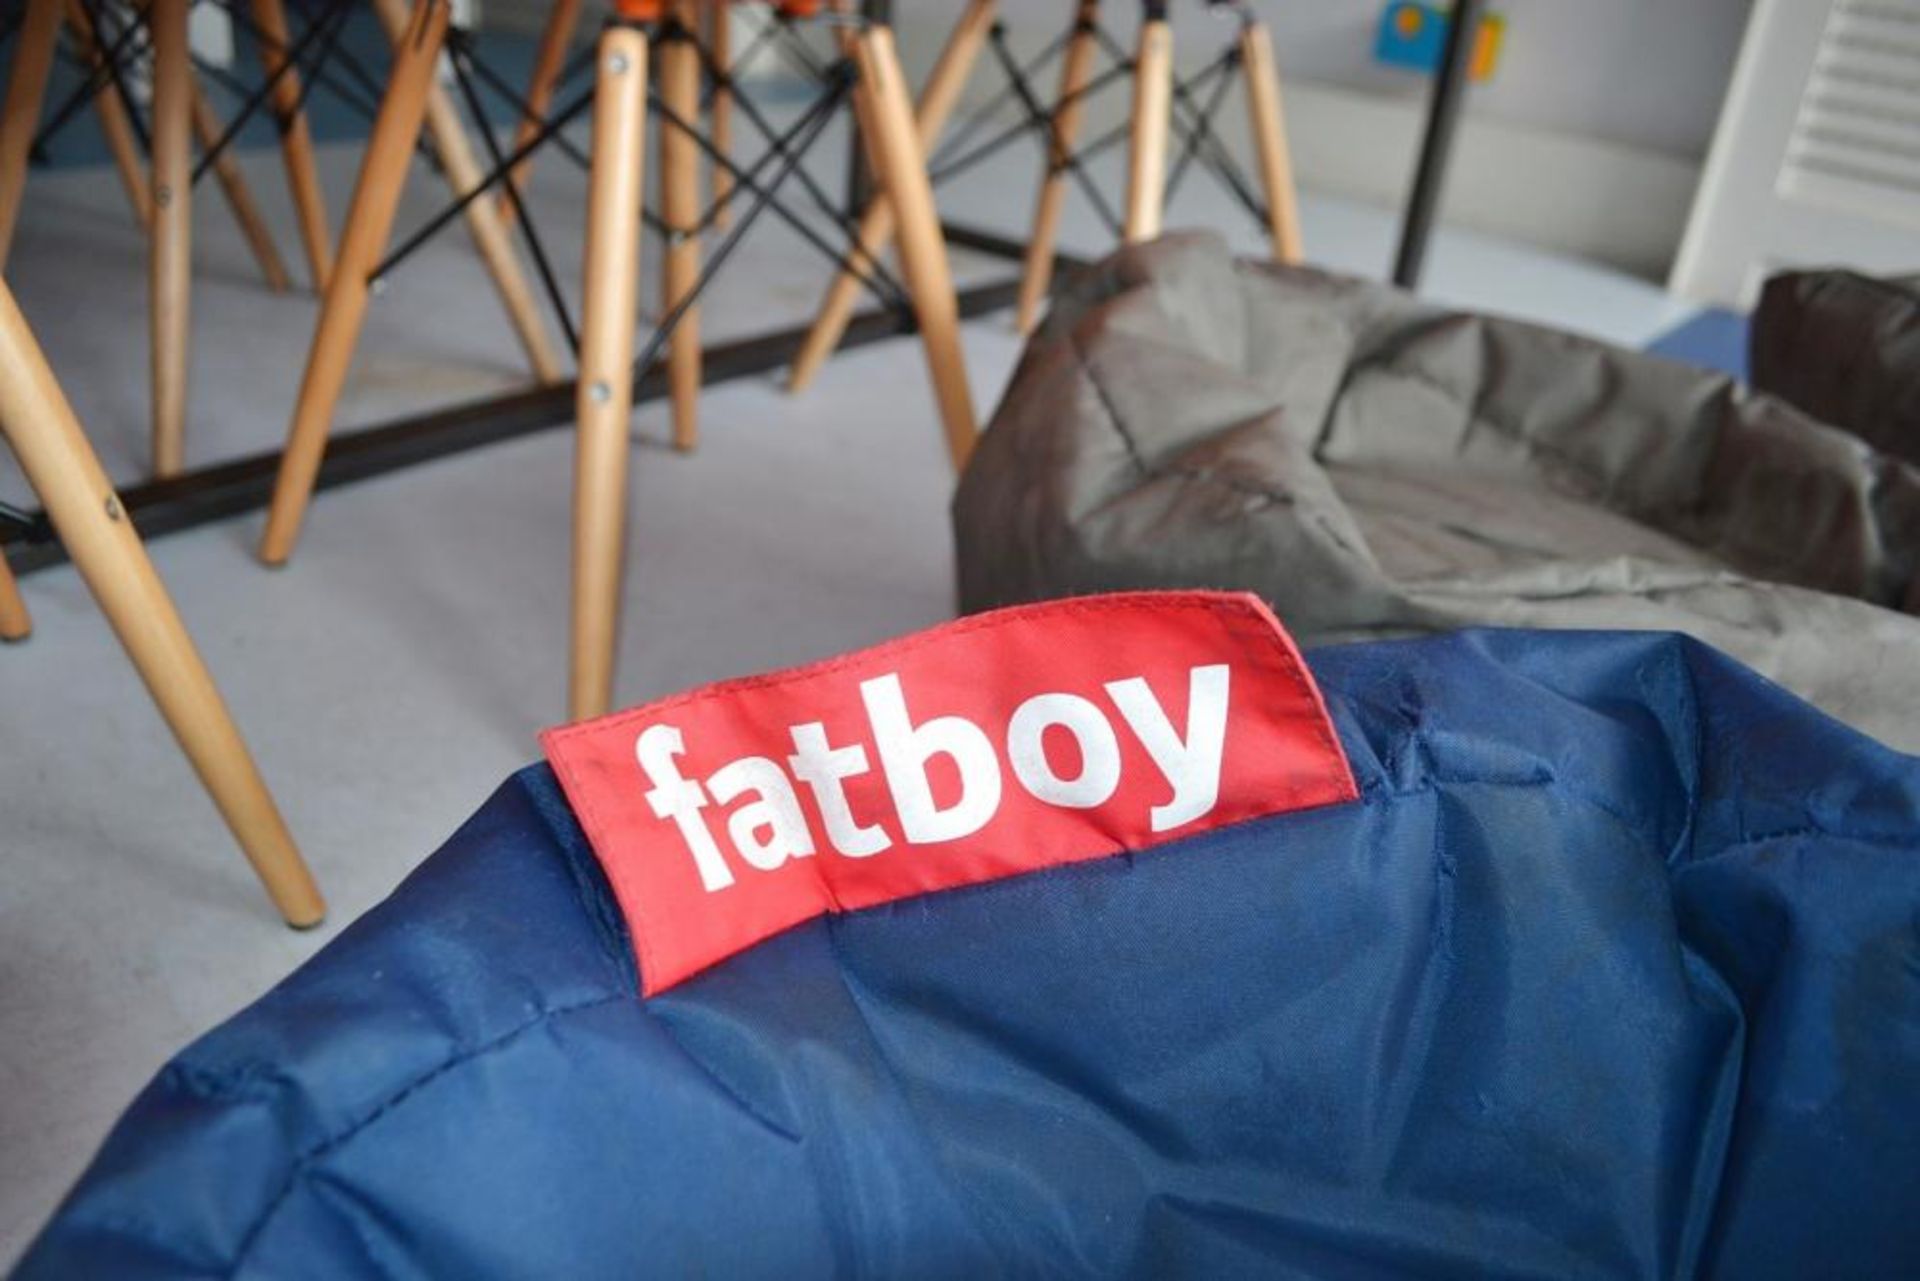 8 x Children's Fatboy Bean Bags - CL425 - Location: Altrincham WA14 - Bild 3 aus 5